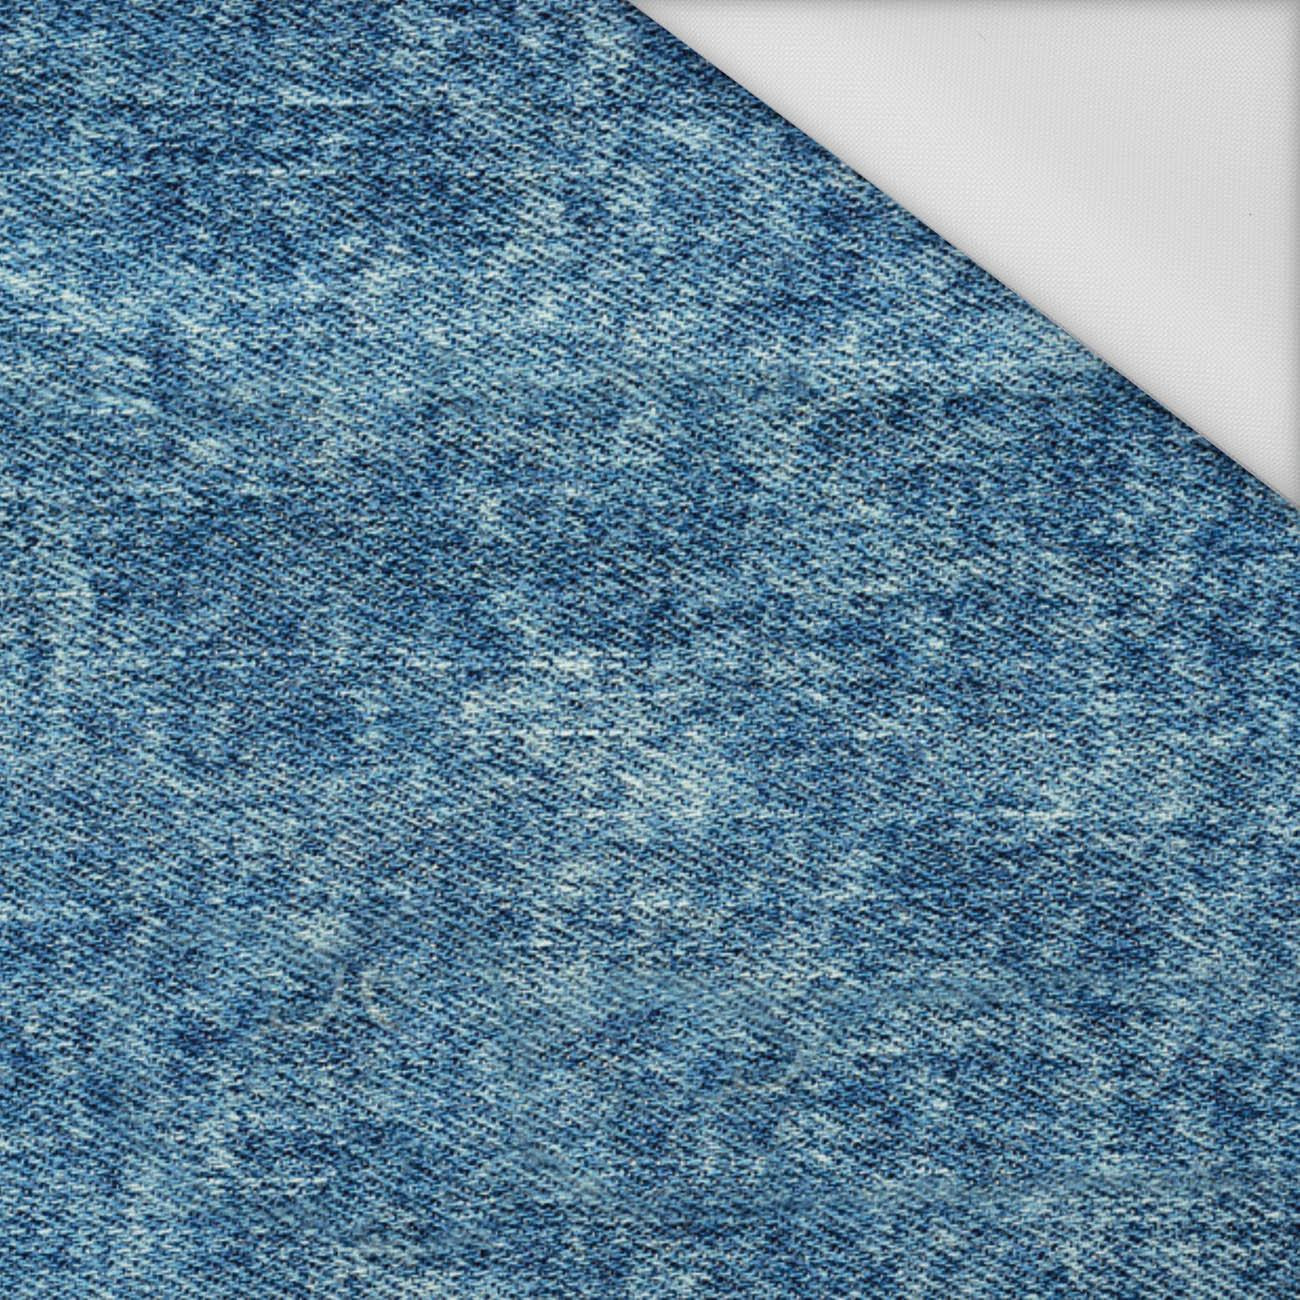 VINTAGE LOOK JEANS (Atlantic Blue) - Wasserabweisende Webware